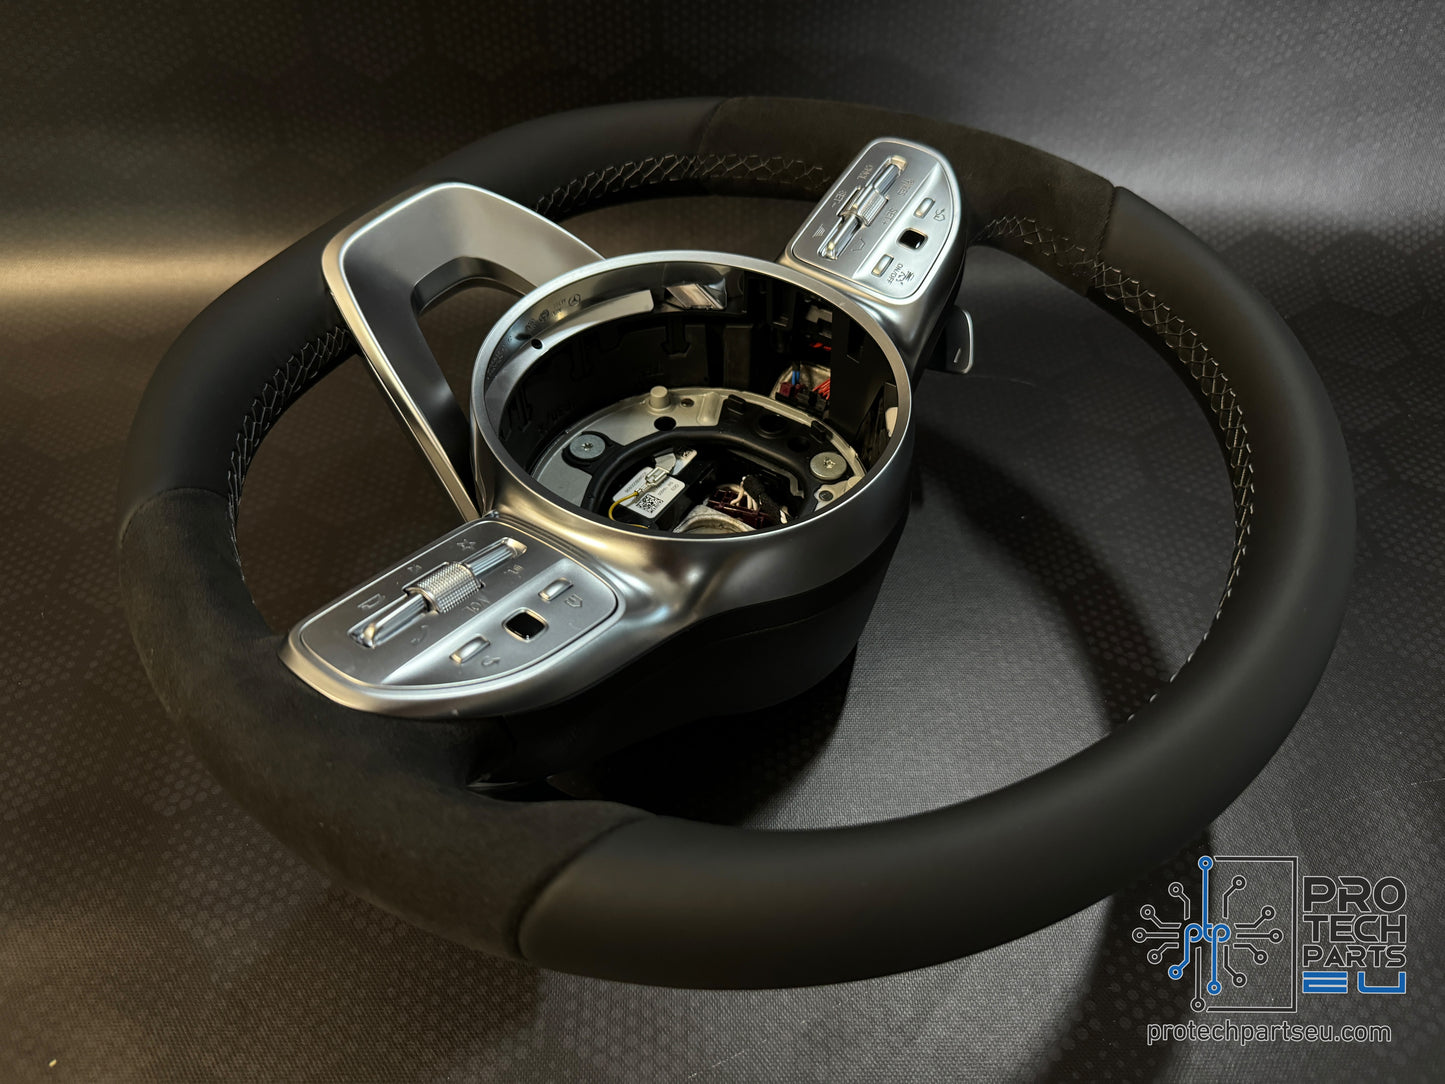 
                  
                    Mercedes AMG - super sport steering wheel alcantara/leather grey stitch w205,w222,w167,w177 etc
                  
                